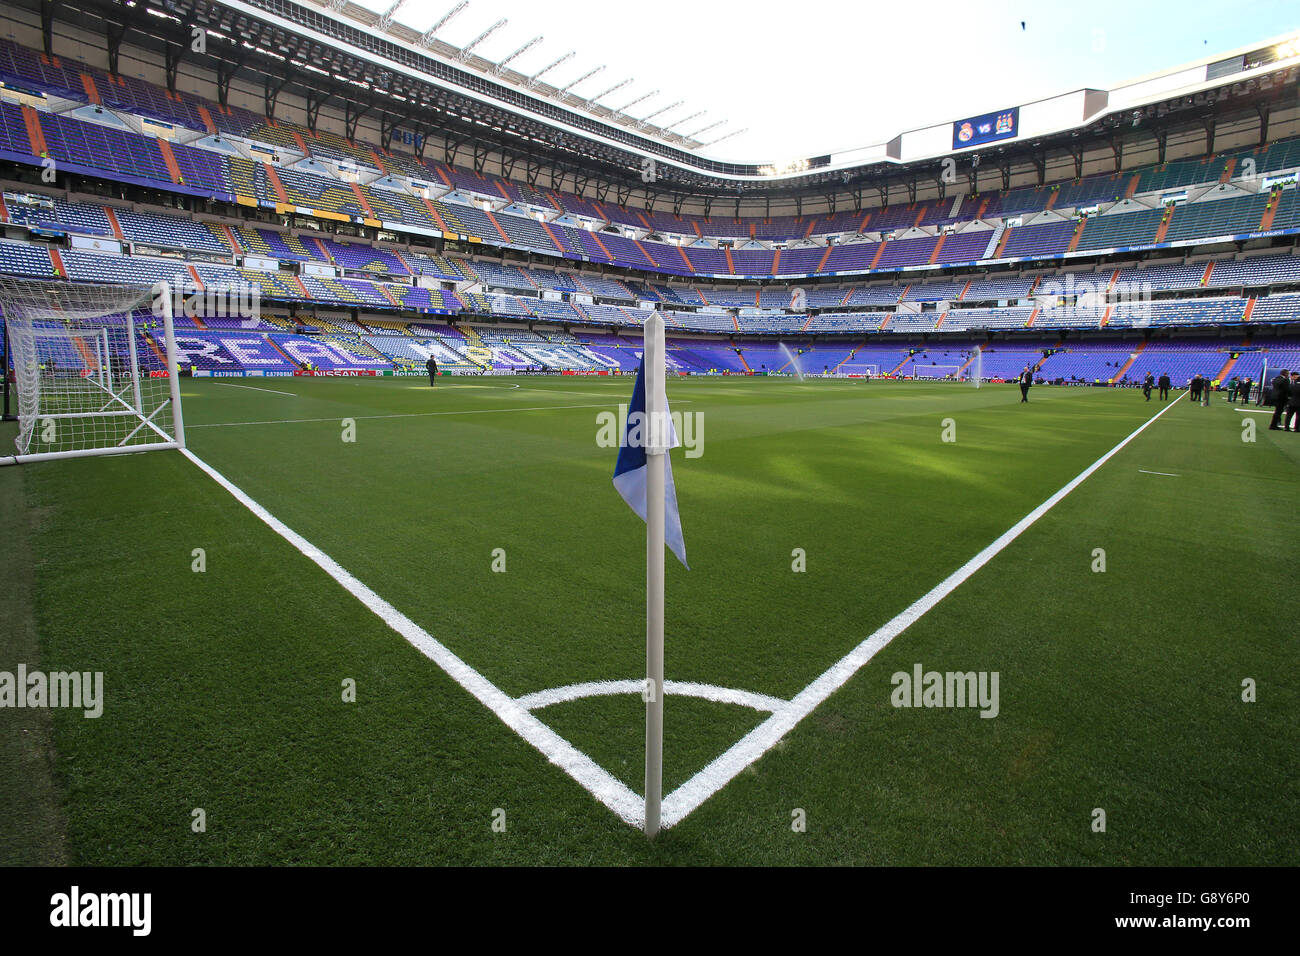 Vue générale du stade avant la demi-finale de la Ligue des champions de l'UEFA, deuxième étape du match à Santiago Bernabeu, Madrid. Banque D'Images